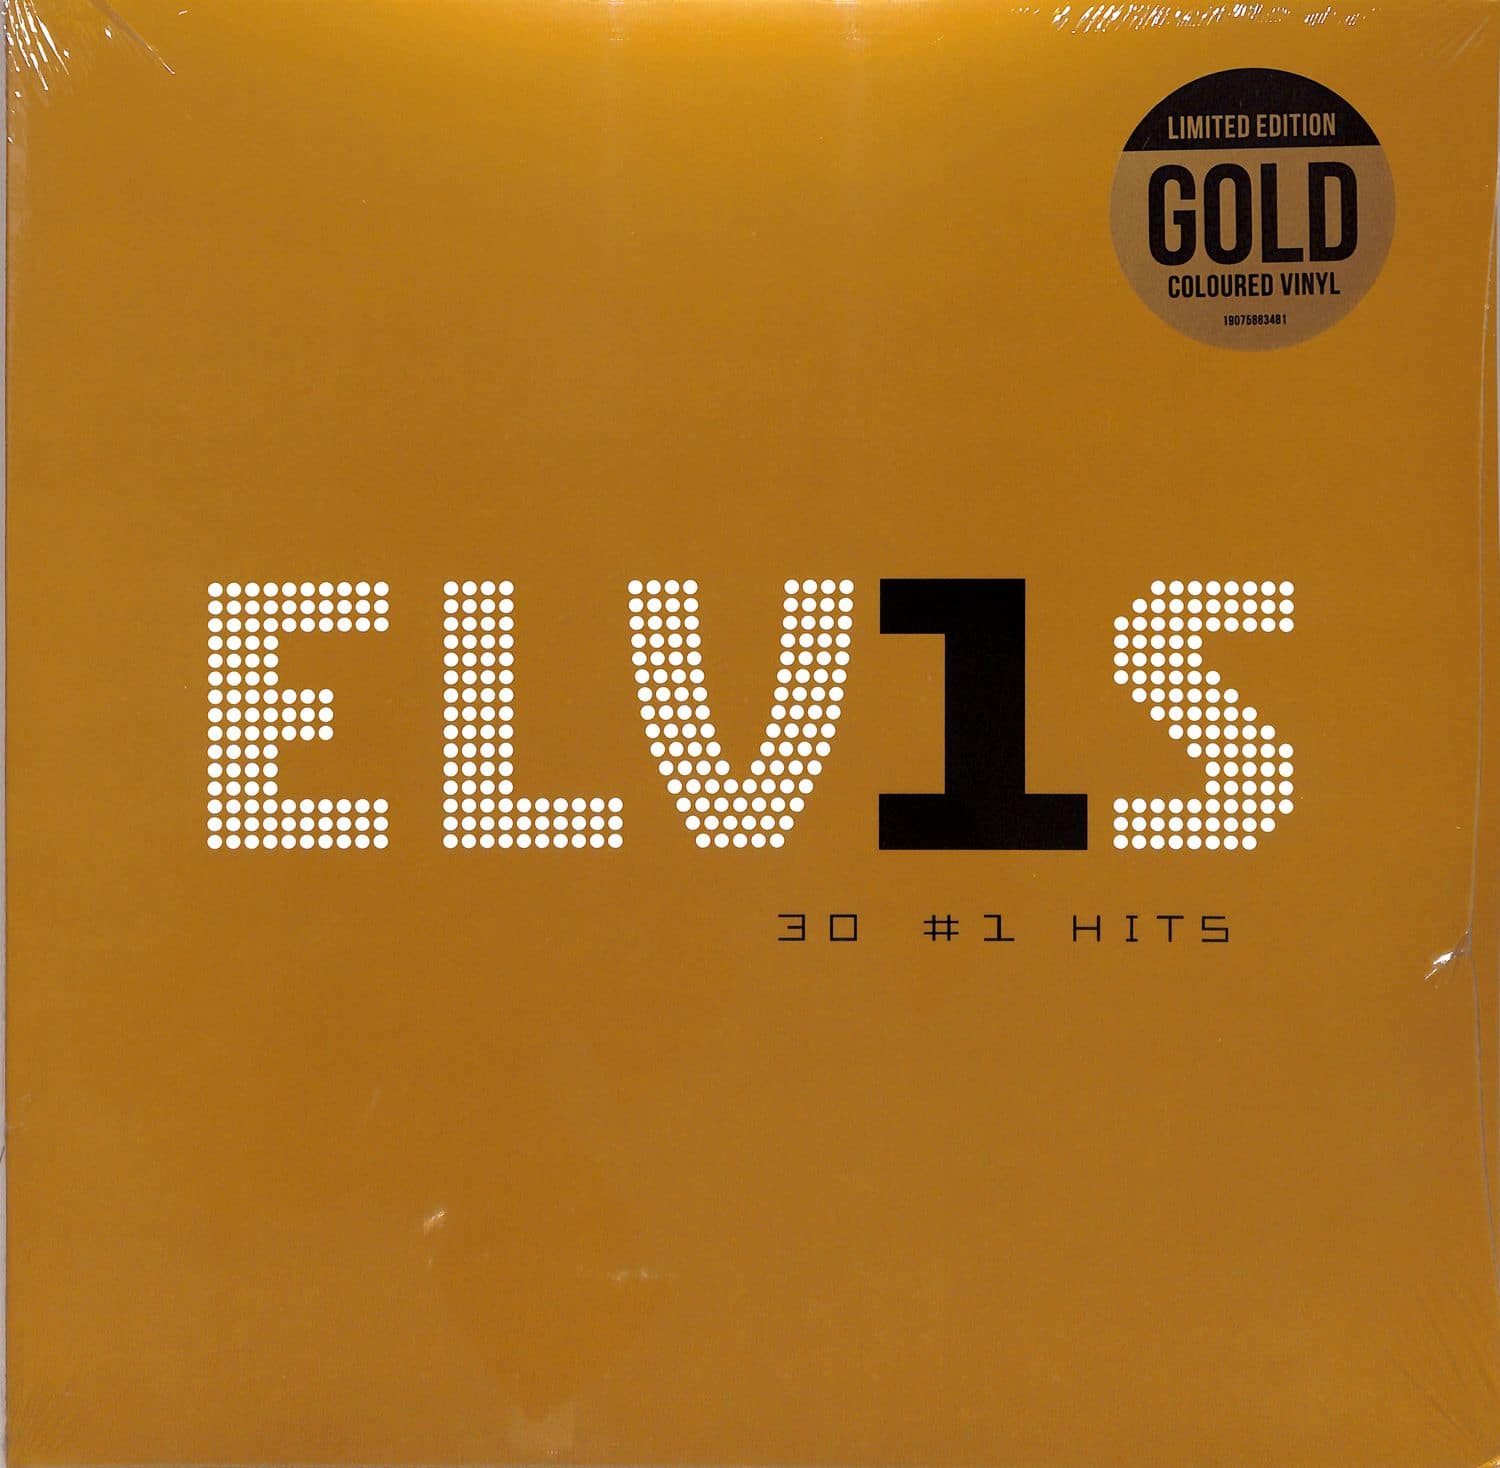 Elvis Presley - ELVIS 30 #1 HITS 